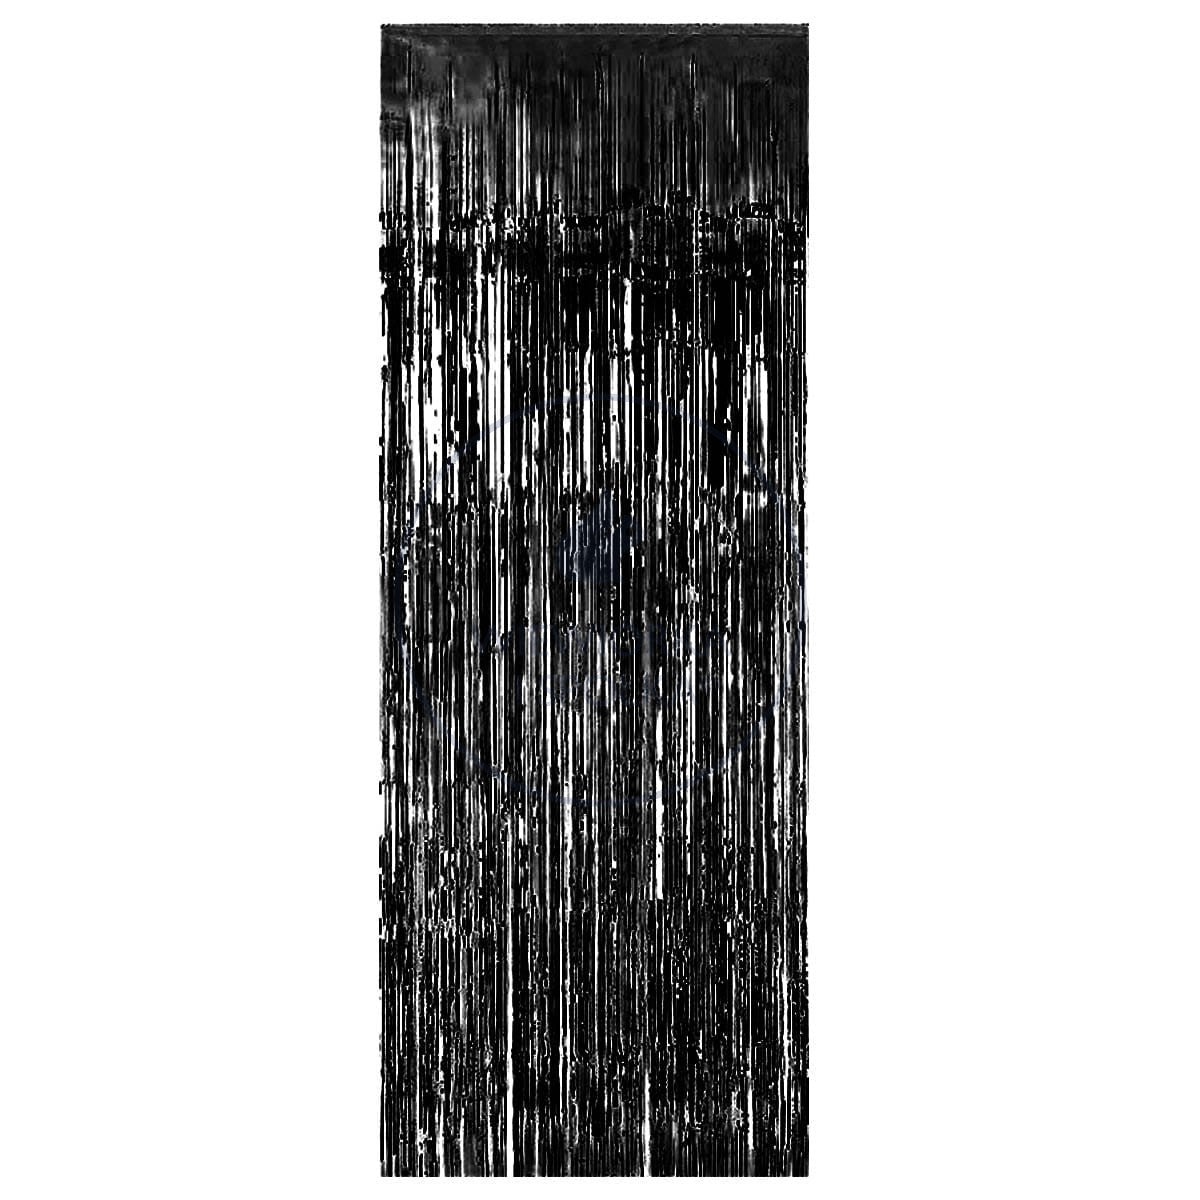 Kurtyna foliowa, matowa, czarna 1m x 2m